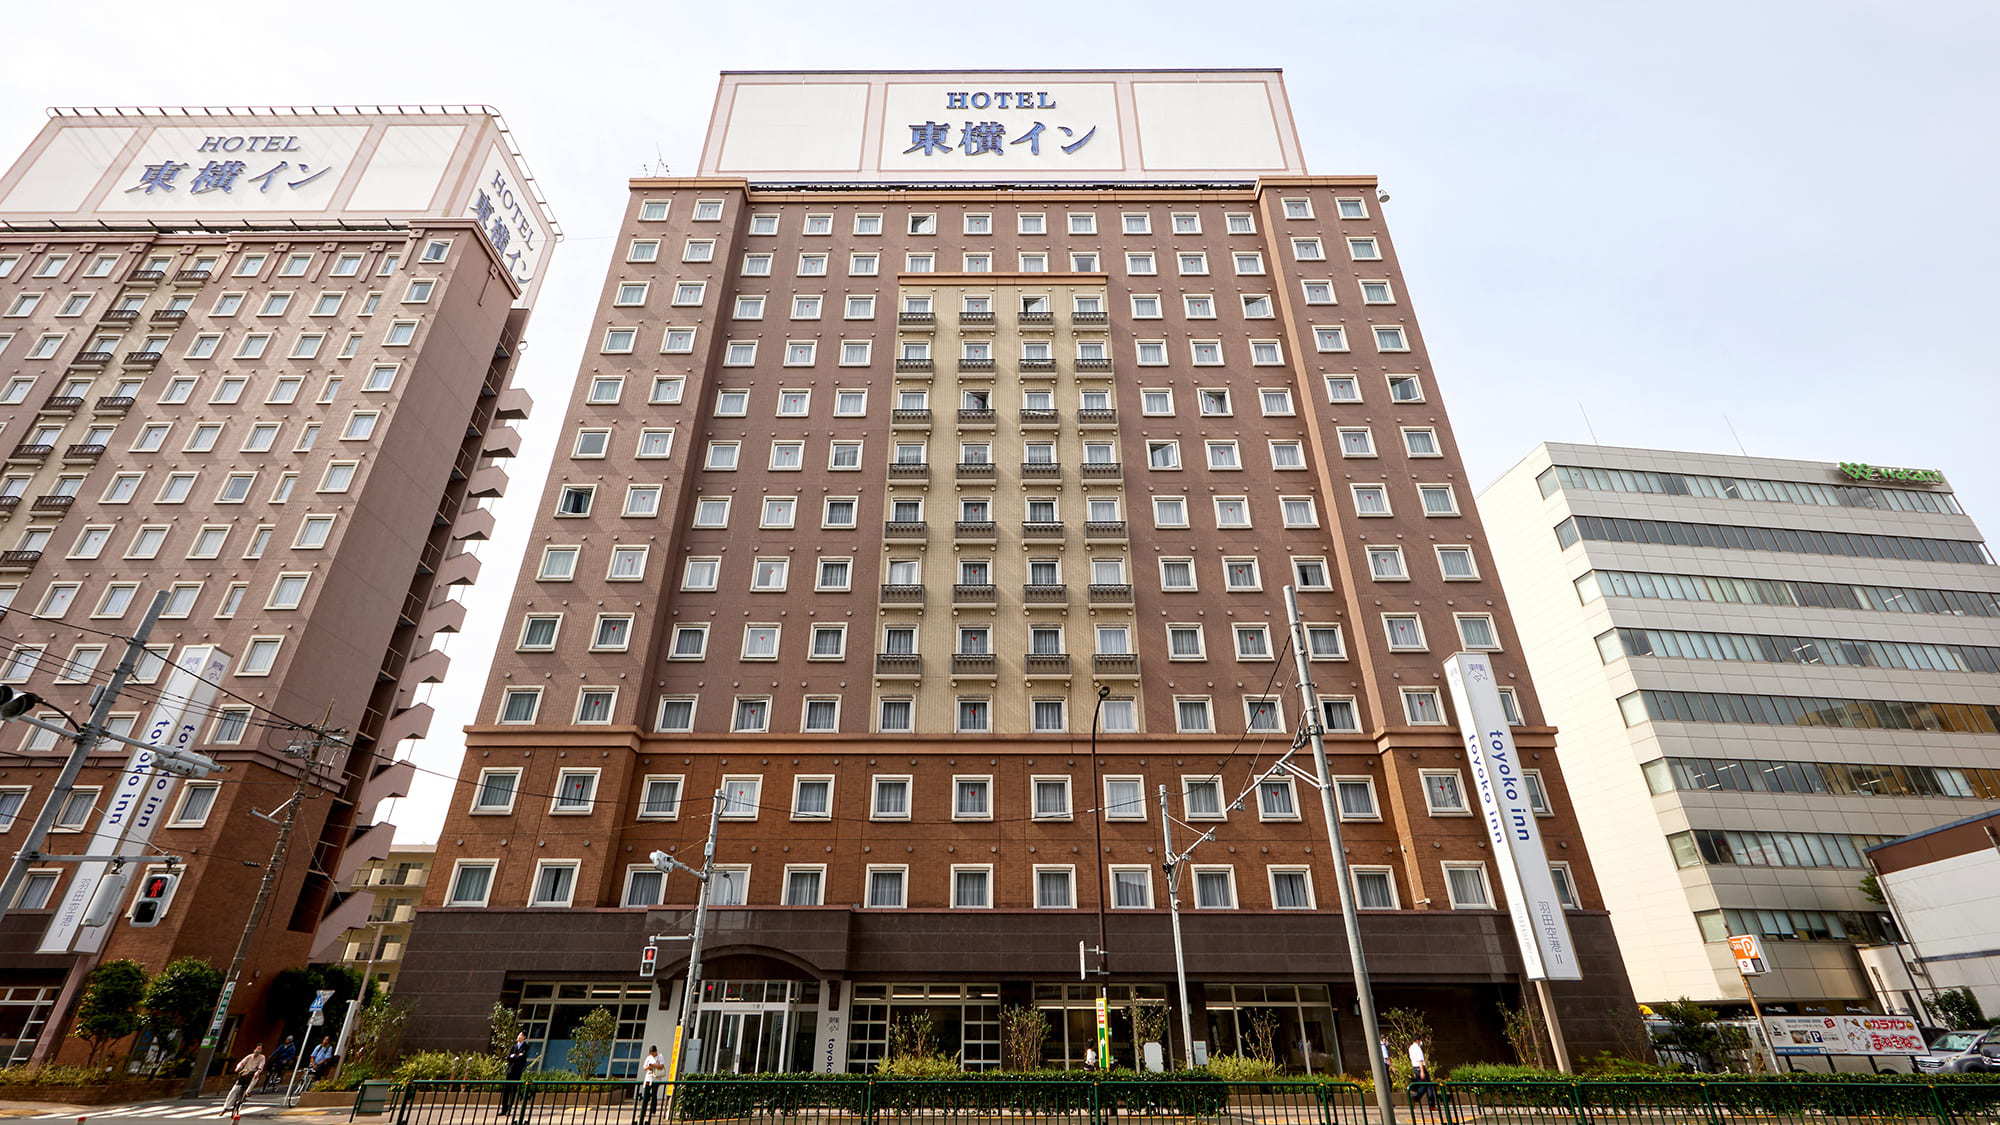 羽田空港近くでツインルームで素泊まりにおすすめの格安ホテル